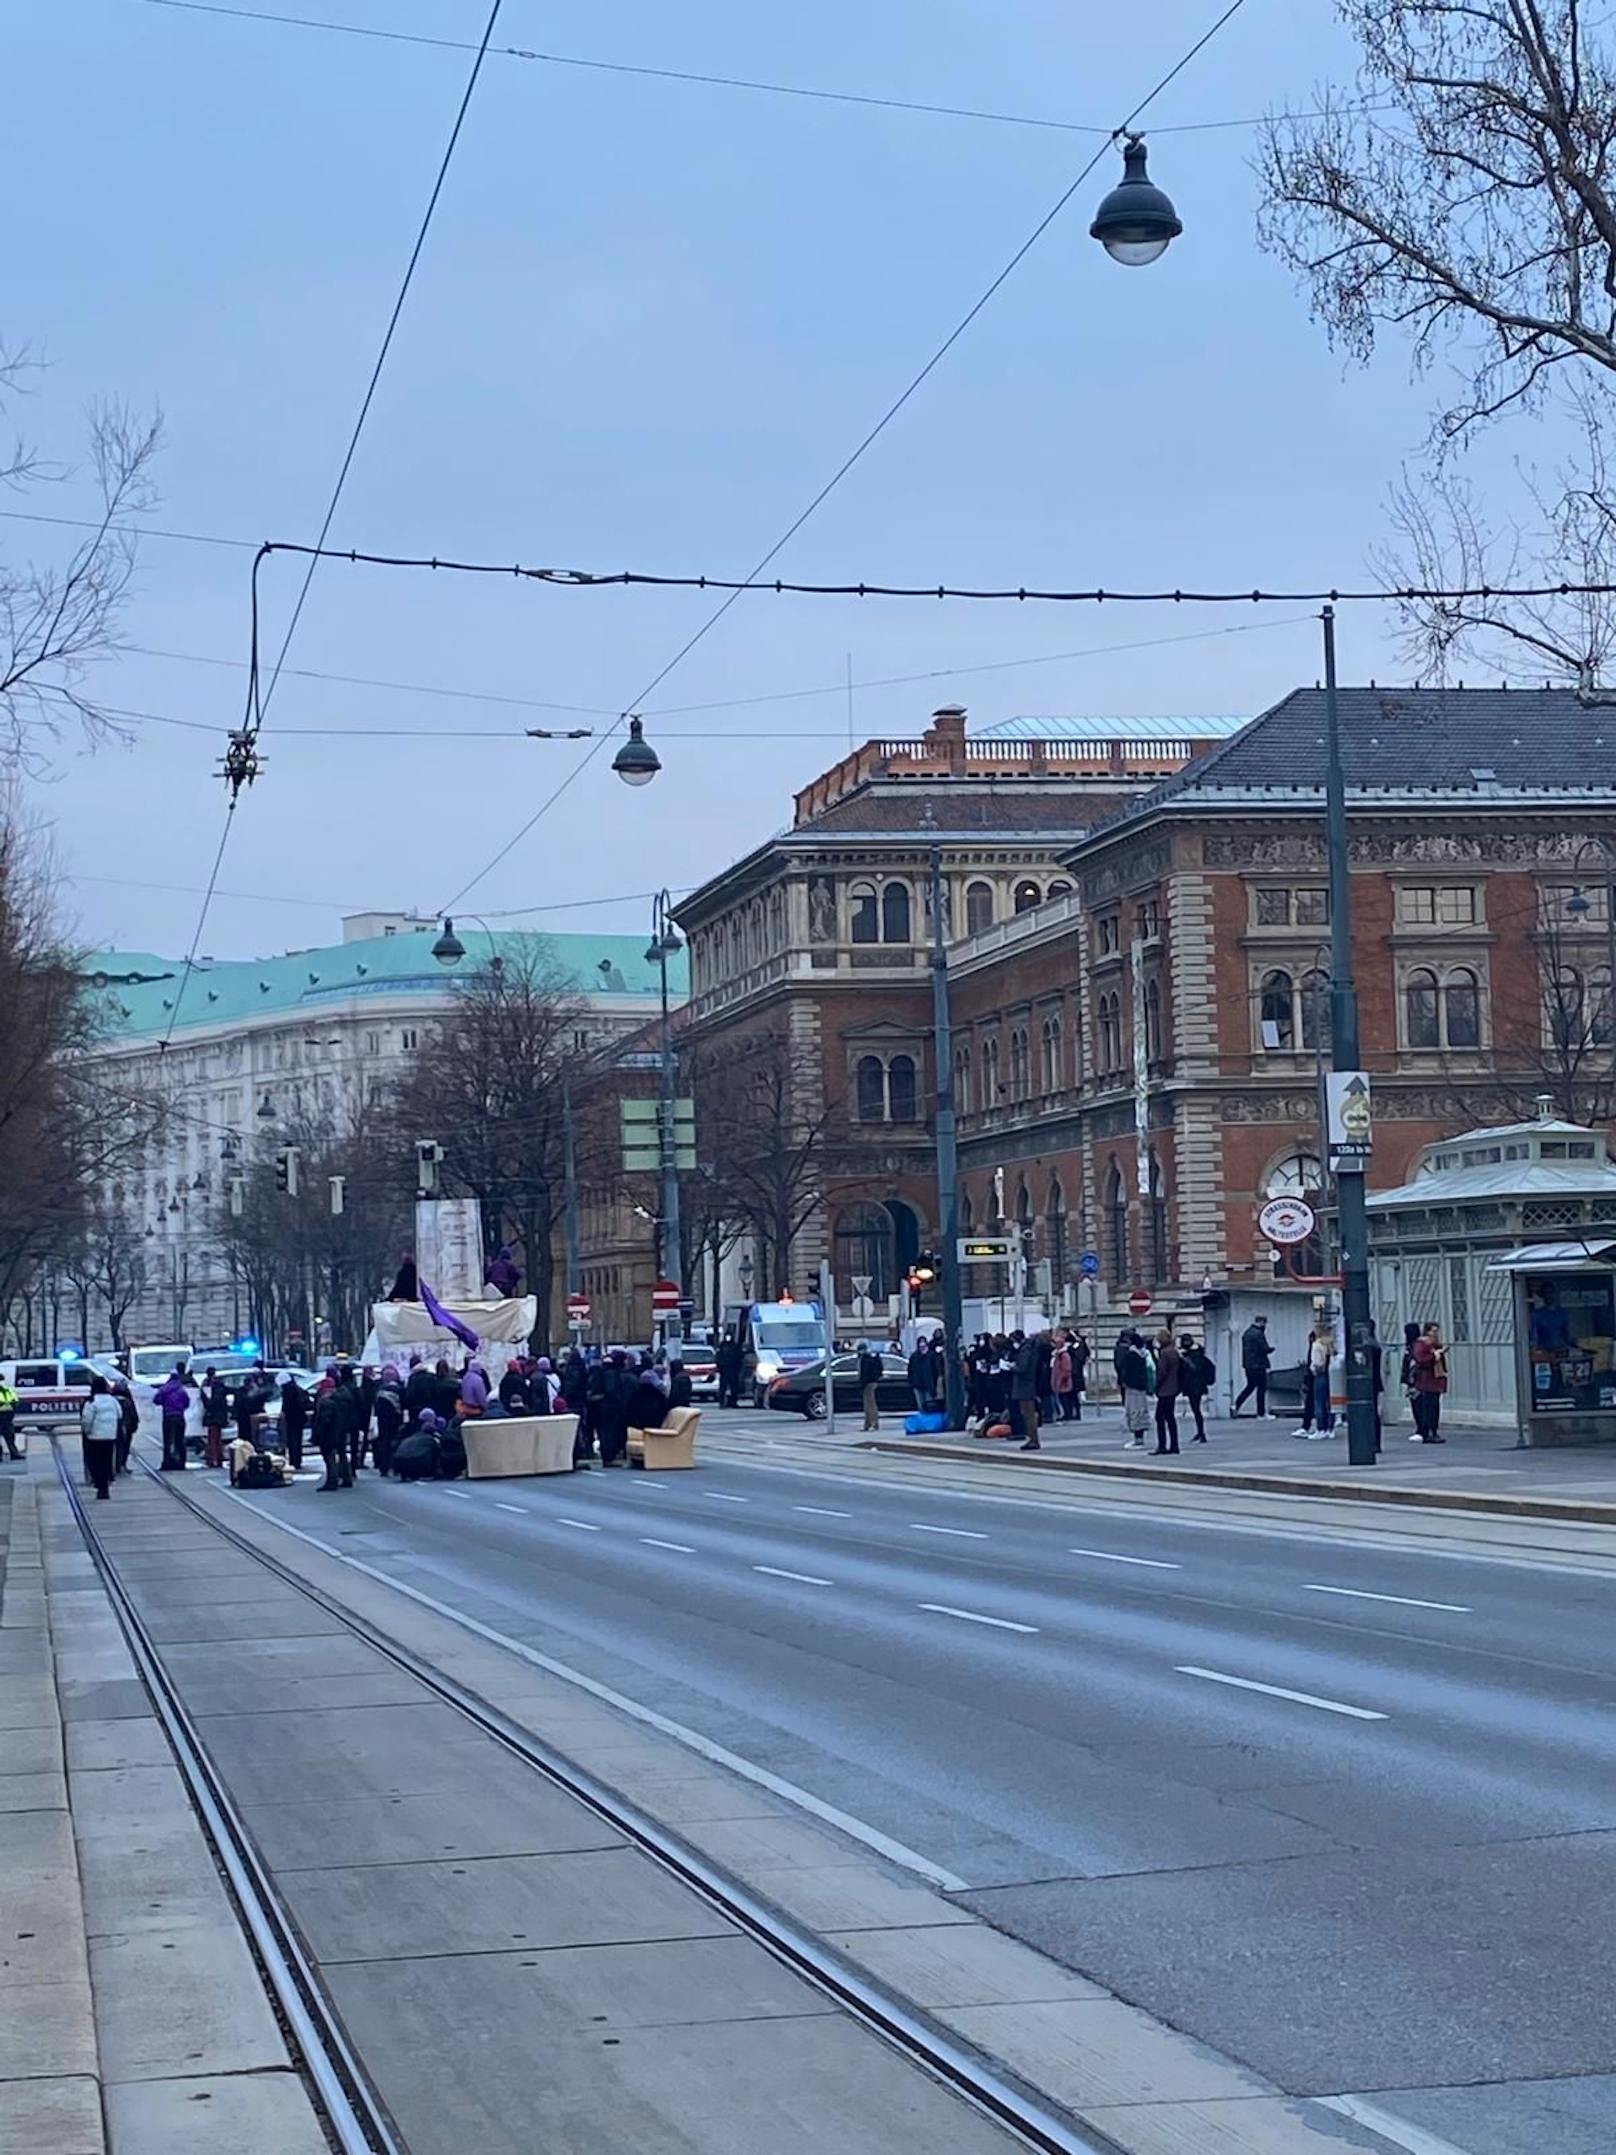 Stau-Chaos in Wien